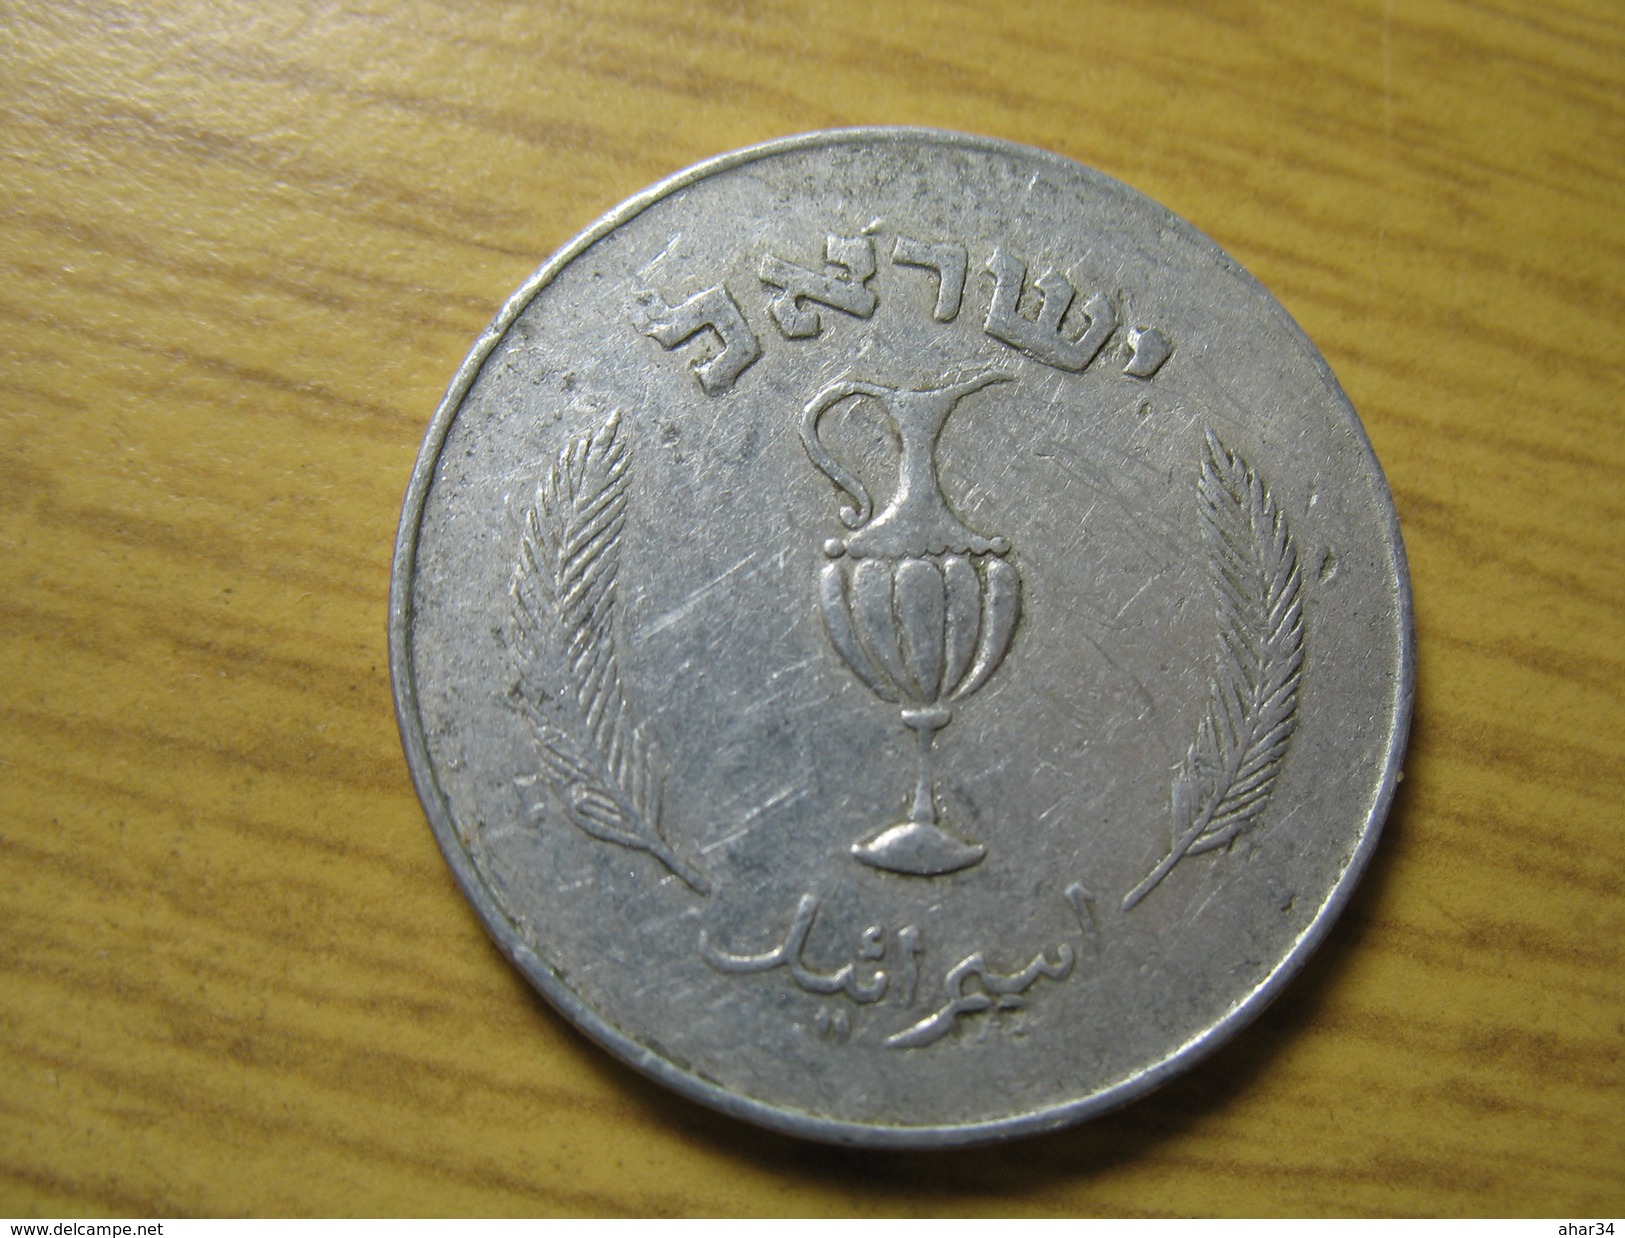 TEMPLATE LISTING ISRAEL 10 PRUTA PRUTAH PRUTOT  1957 RARE  תשי"ז ONLY 1 COIN. - Israele